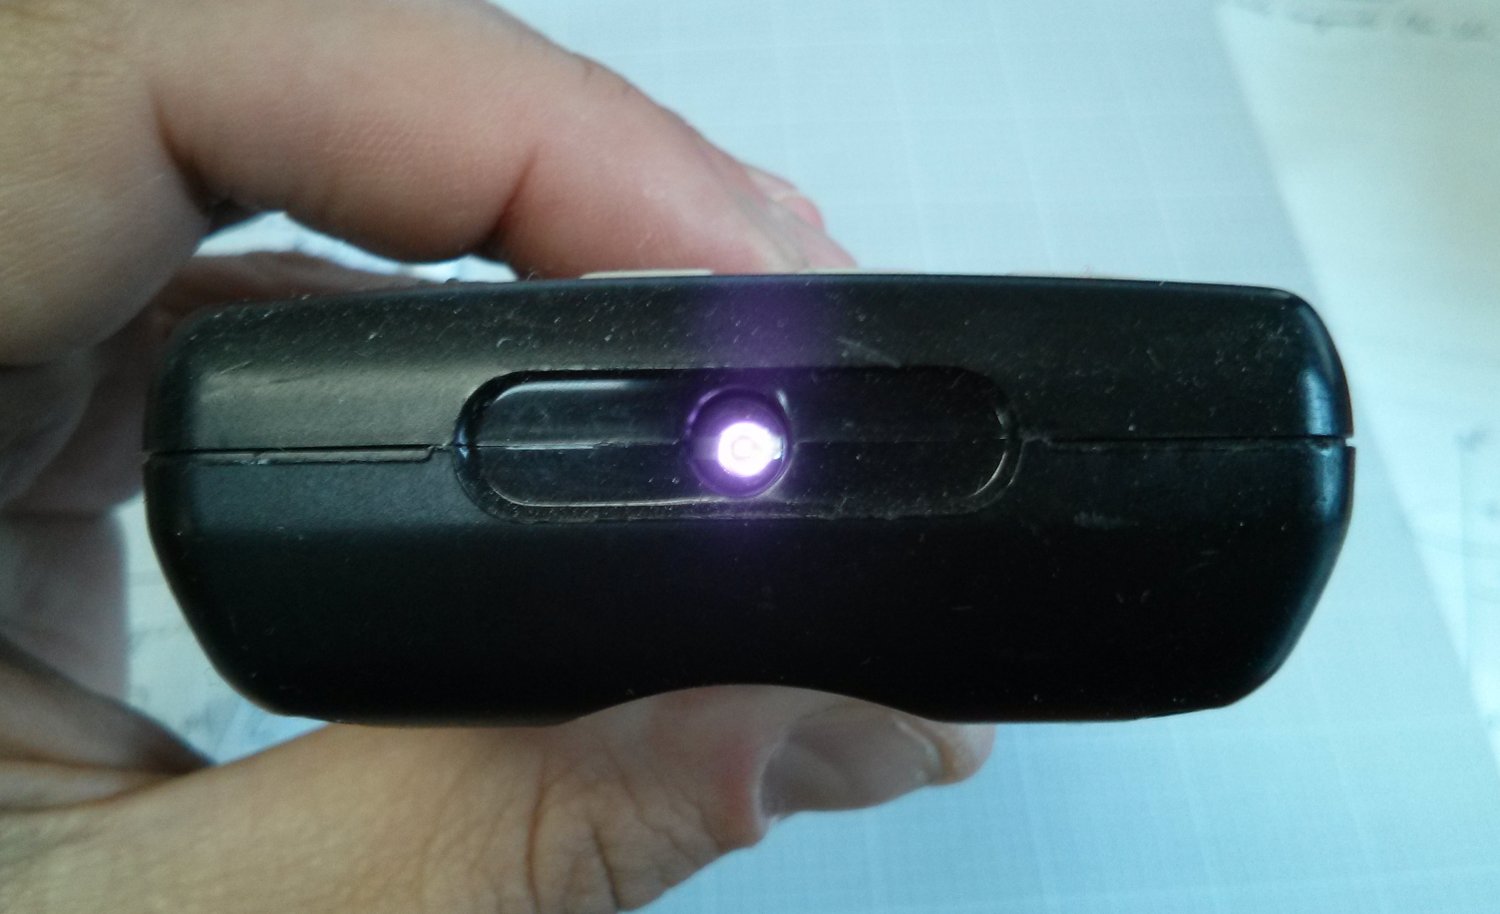 ИК светодиод пульта загорается фиолетовым на камеру. Источник.